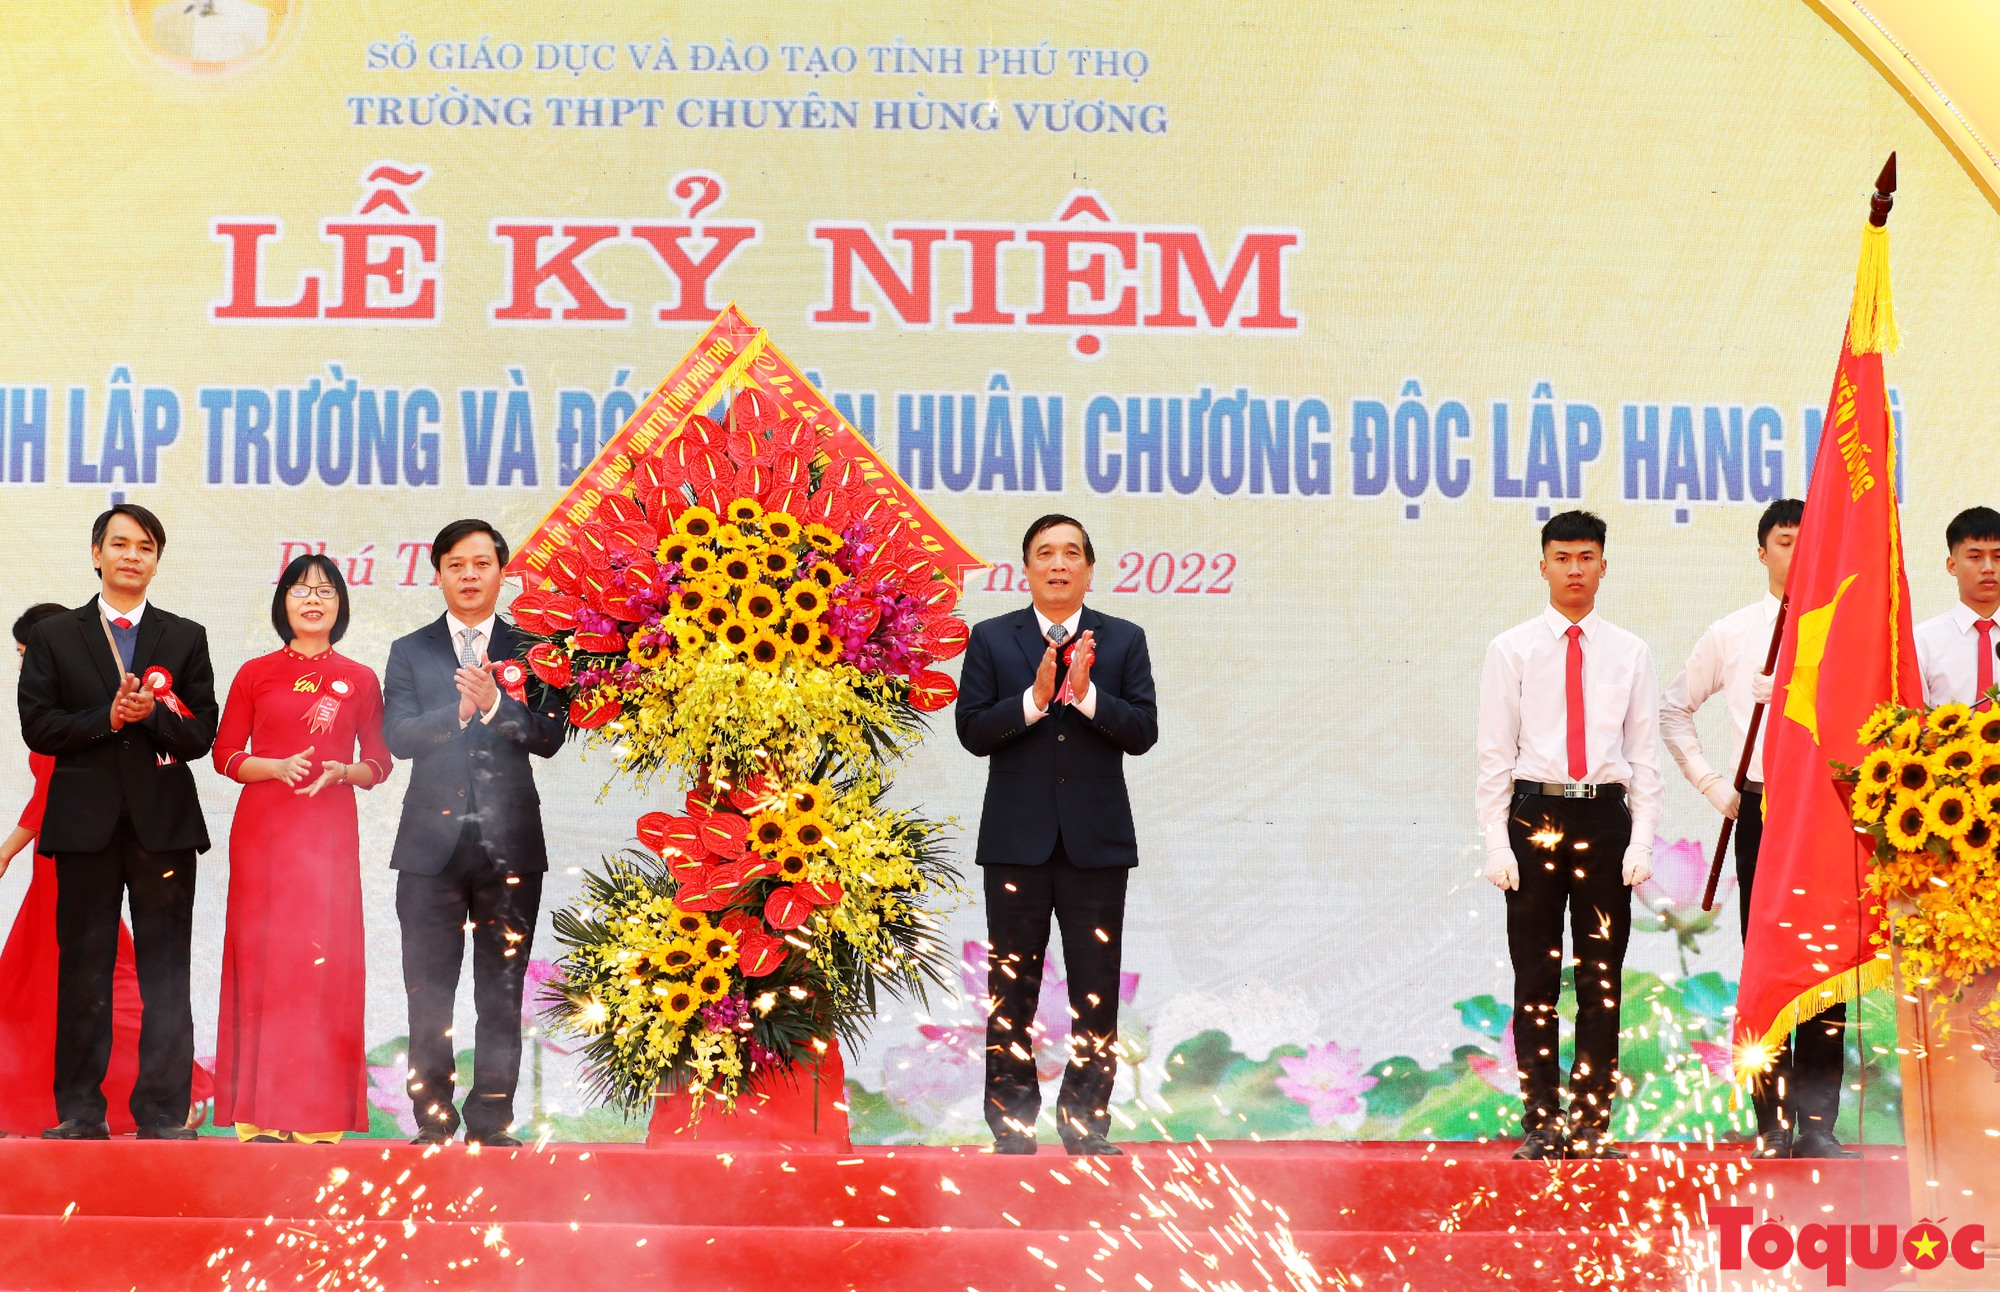 Trường THPT Chuyên Hùng Vương kỷ niệm 40 năm thành lập và đón nhận Huân chương Độc lập hạng Nhì - Ảnh 9.